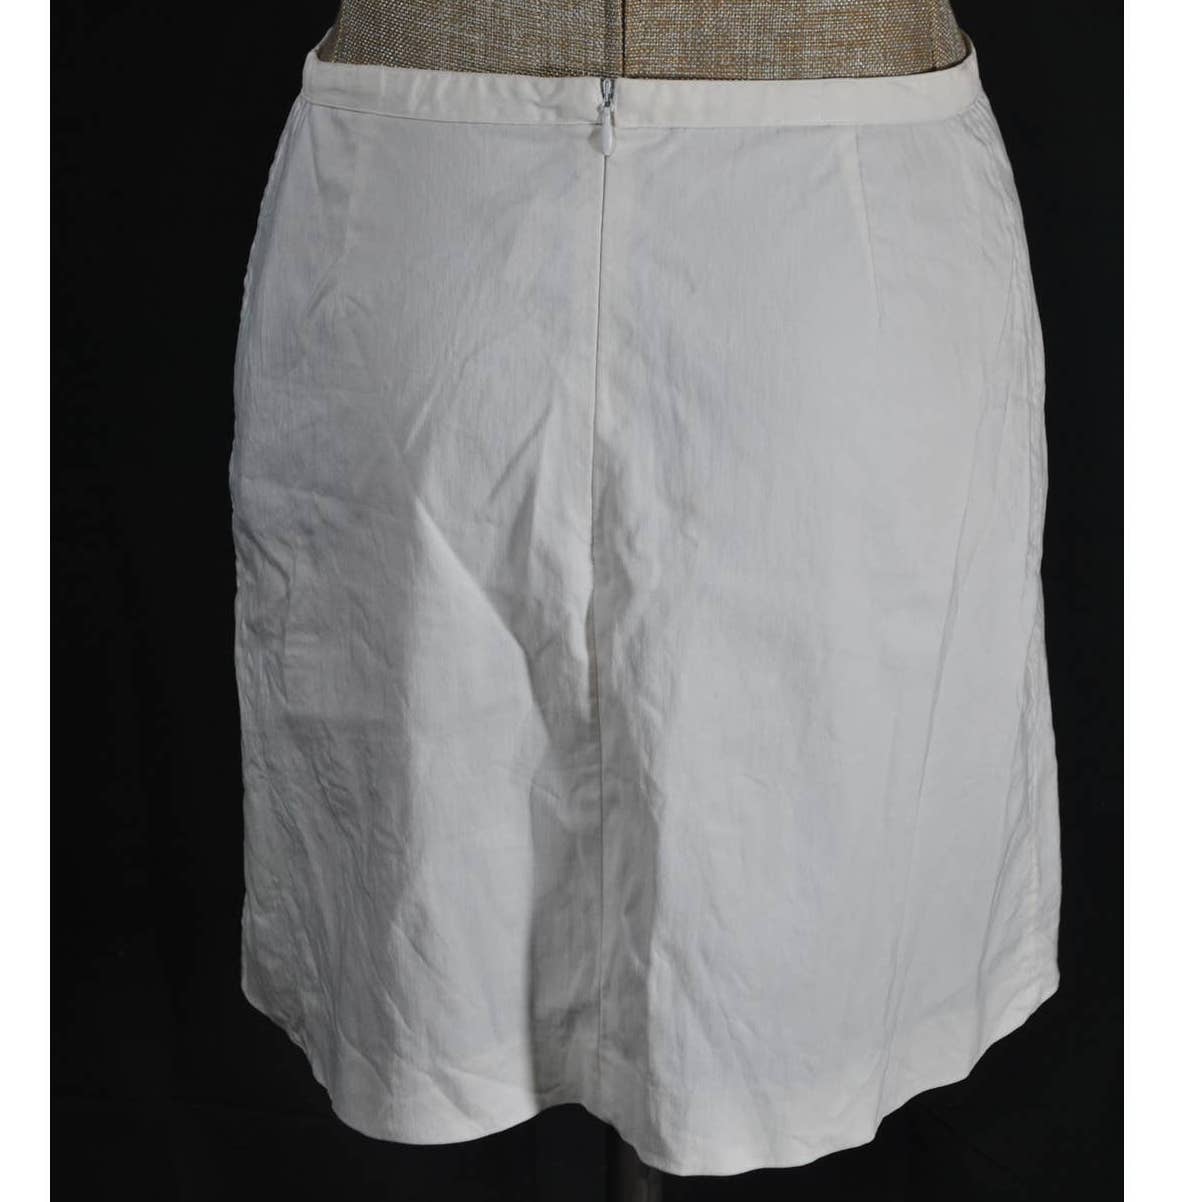 Kookai White Midi Skirt with Buckle- 40 (US 8)